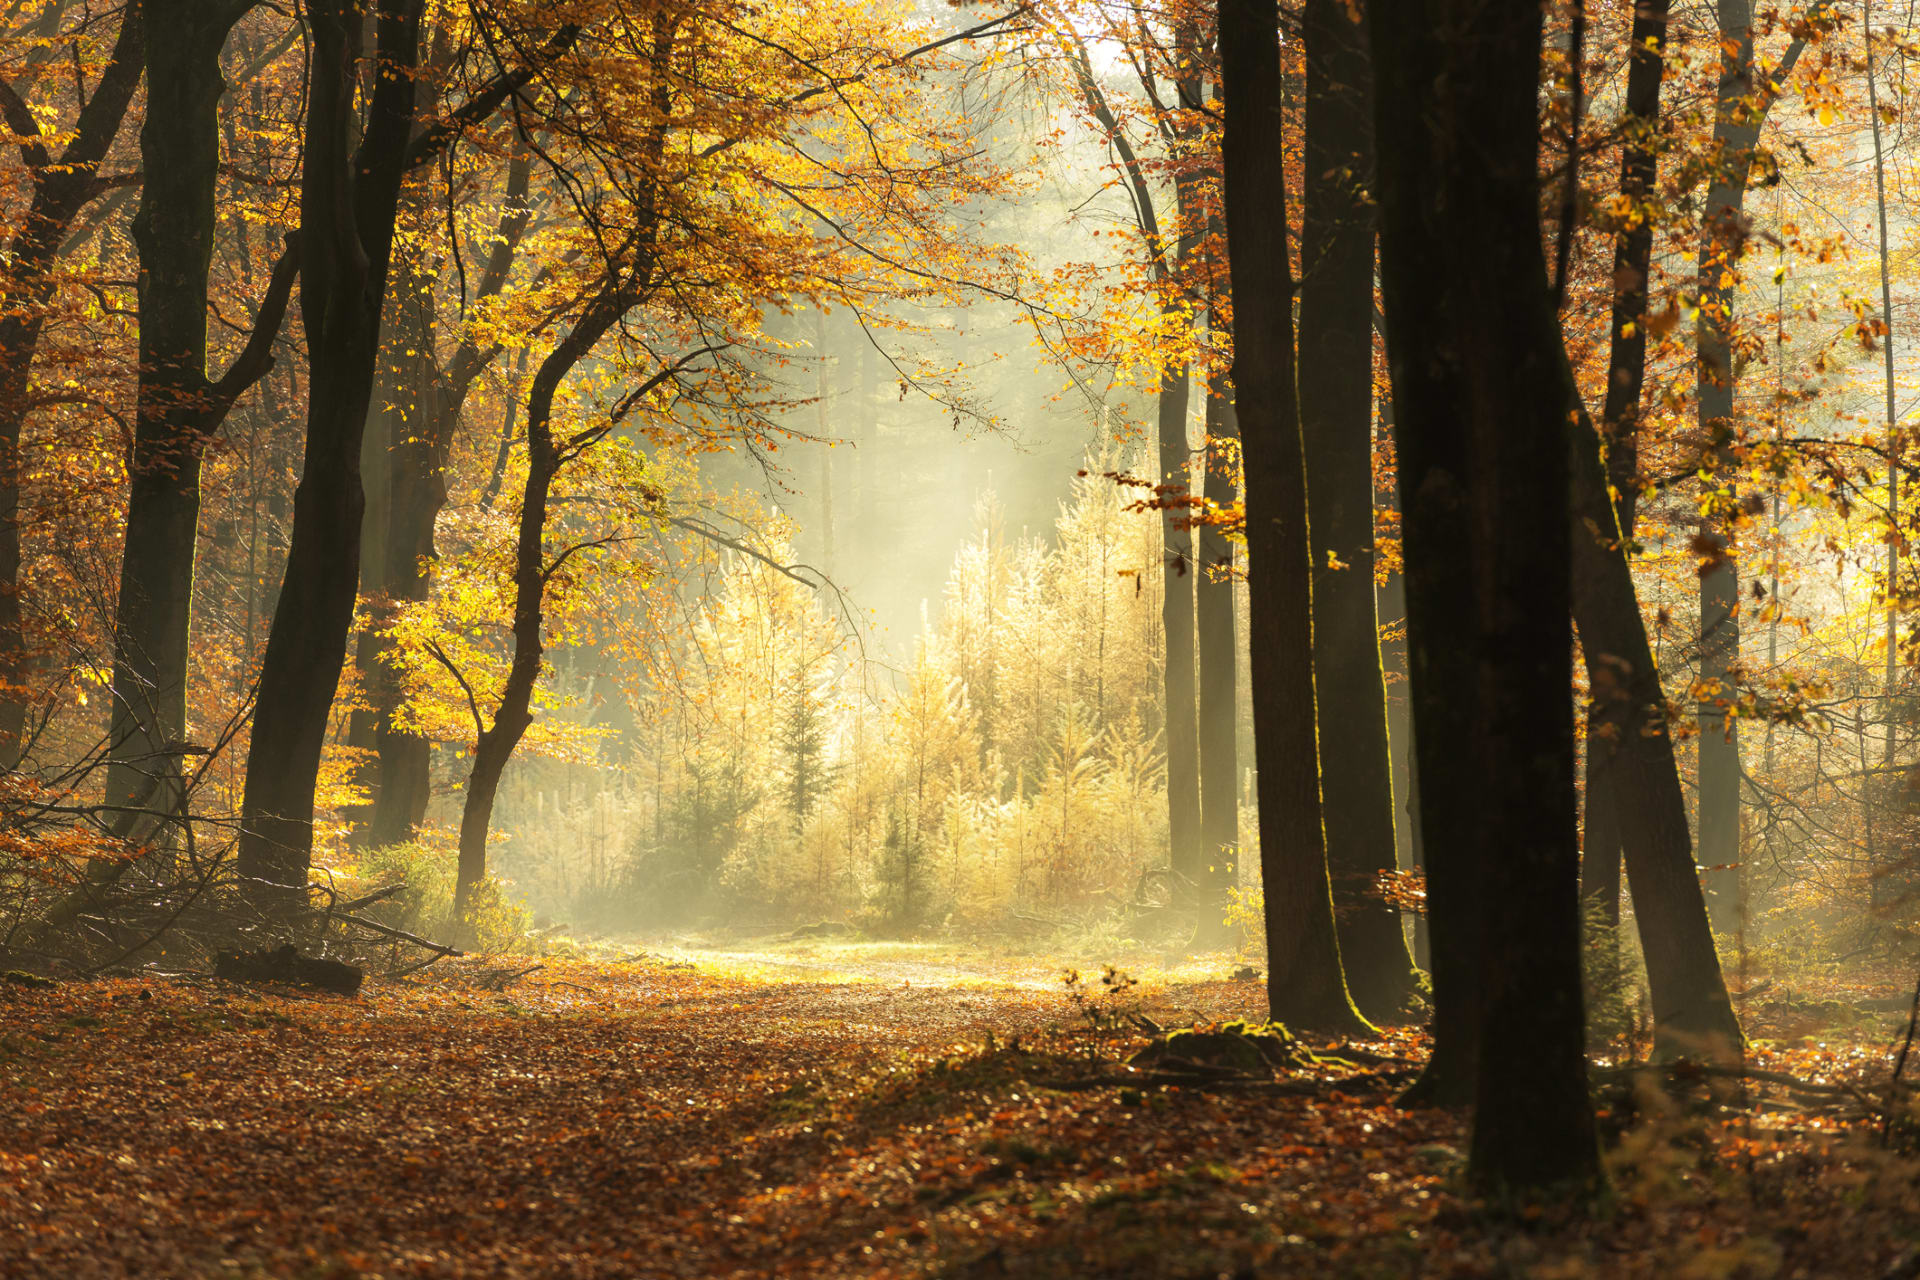 Vyrážejte co nejvíce do přírody, která vás nabije energií. Letošní podzim je krásný.